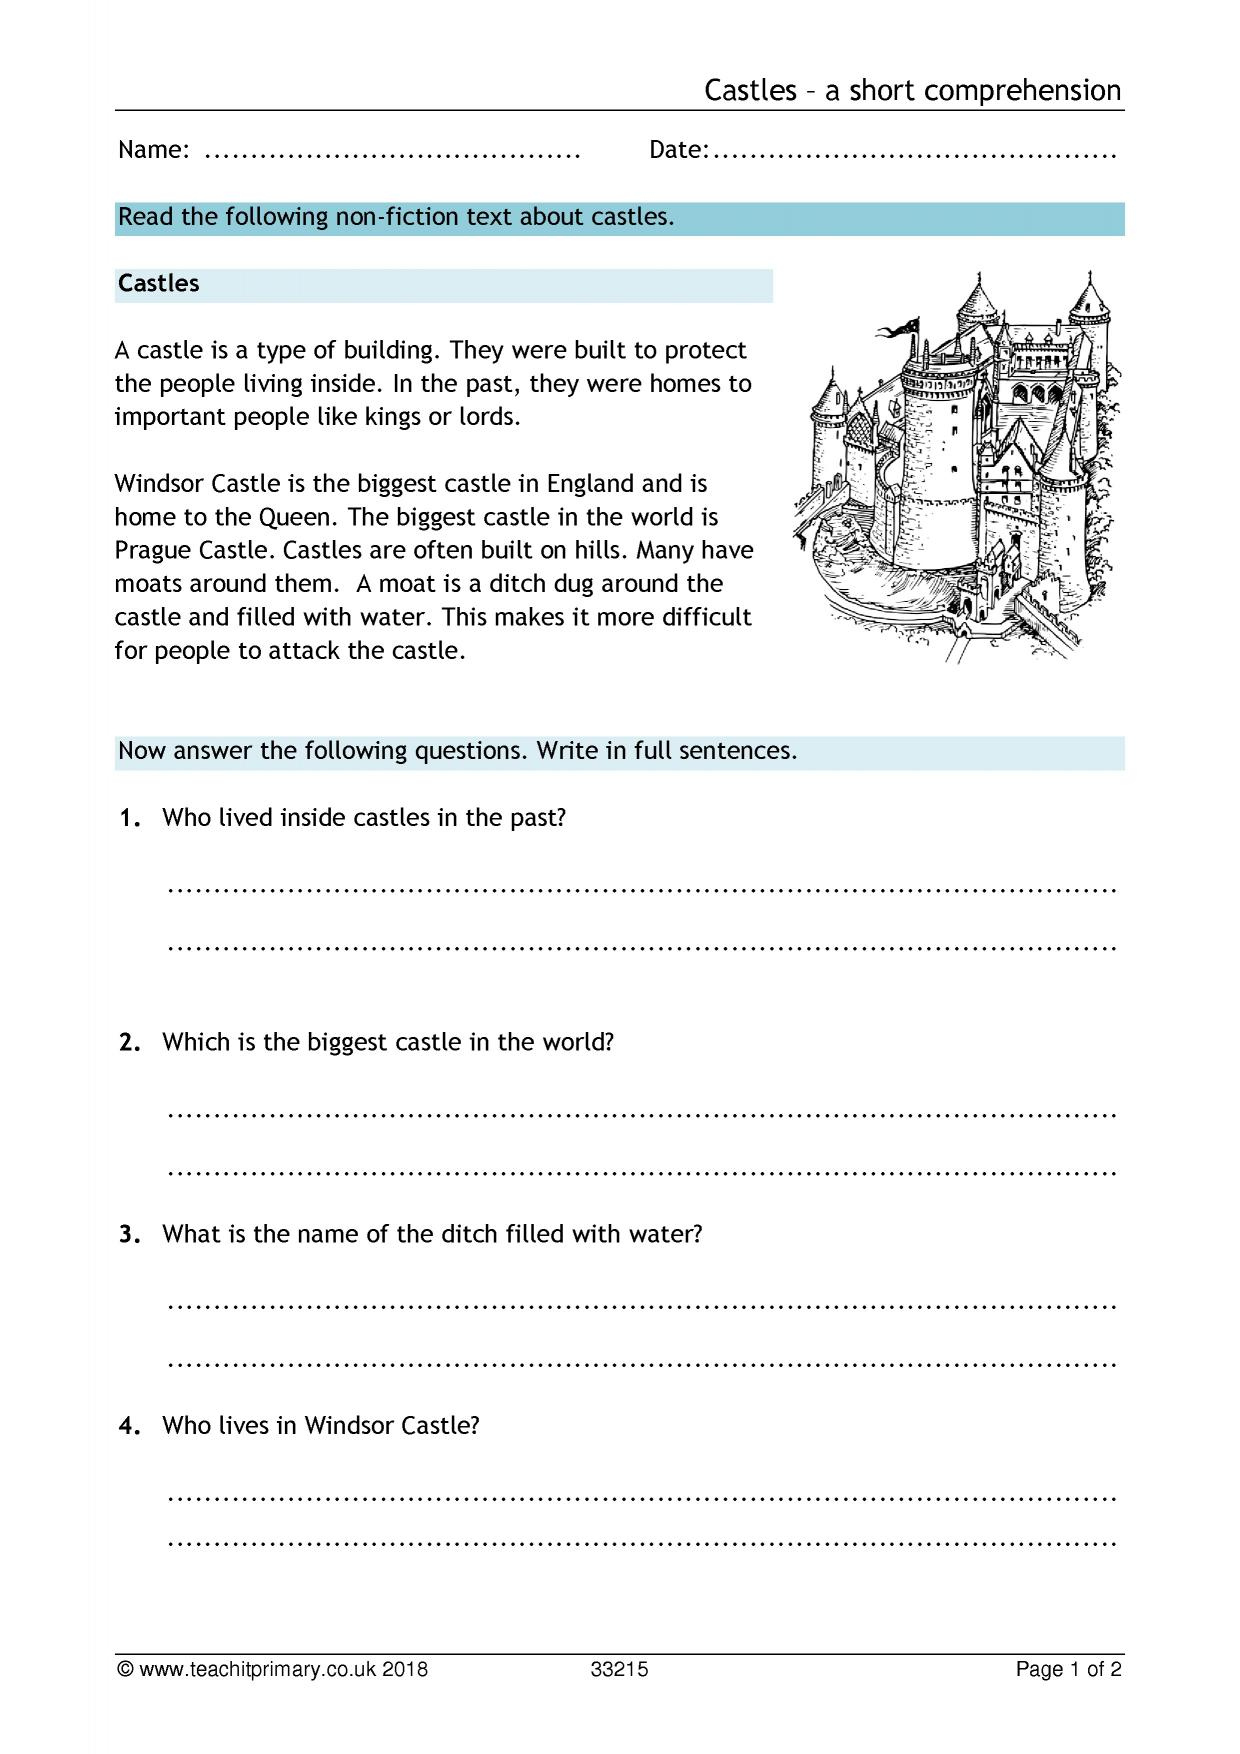 Free Comprehension Worksheet Ks1 Printable Worksheets And Activities 